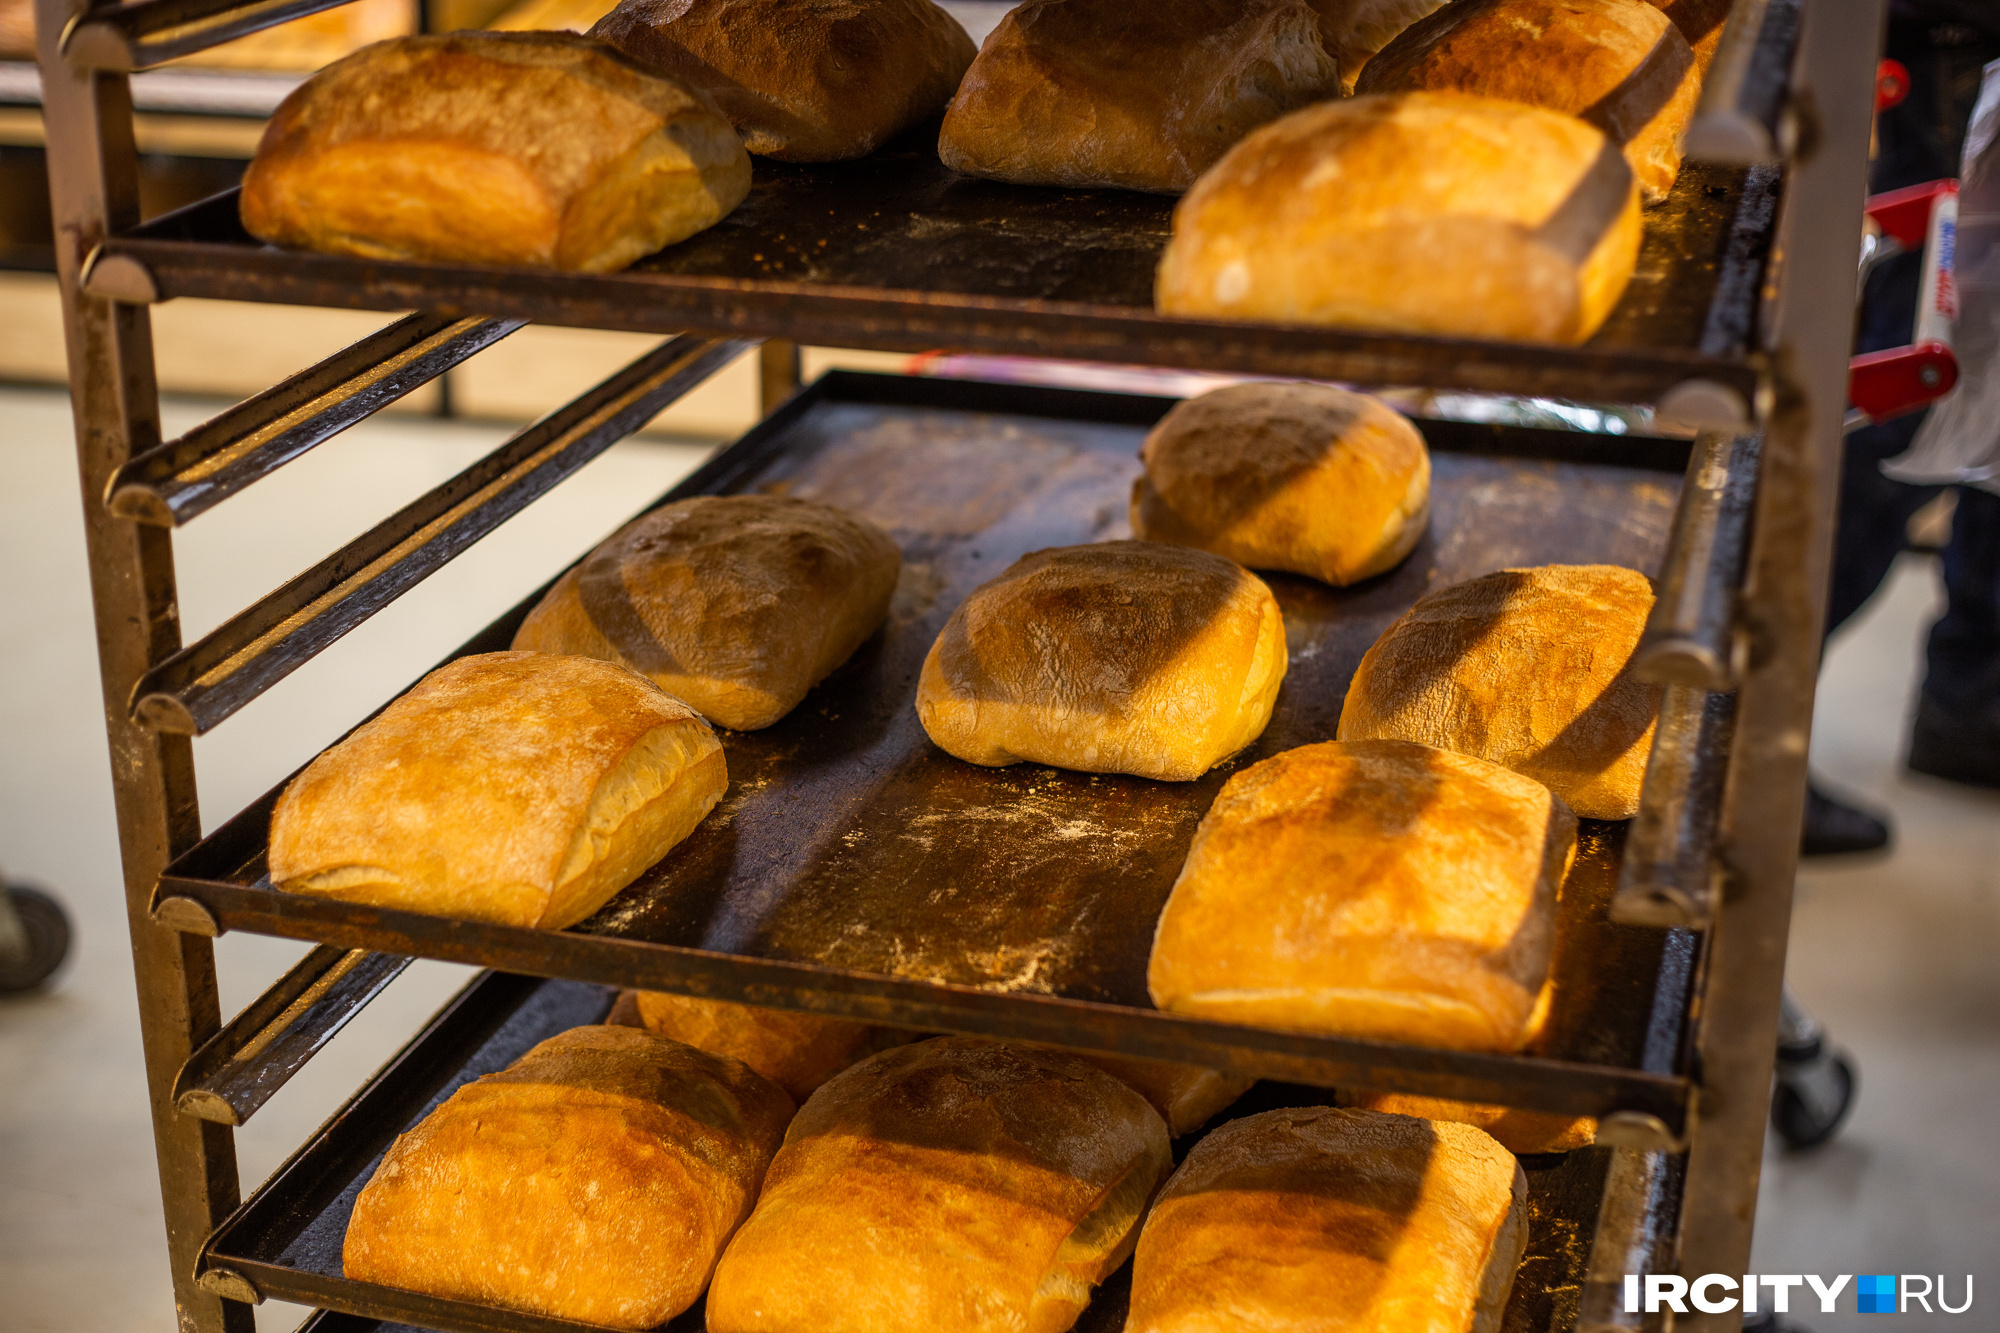 Производители предупредили, что хлеб в Красноярске подорожает в августе. На сколько и почему